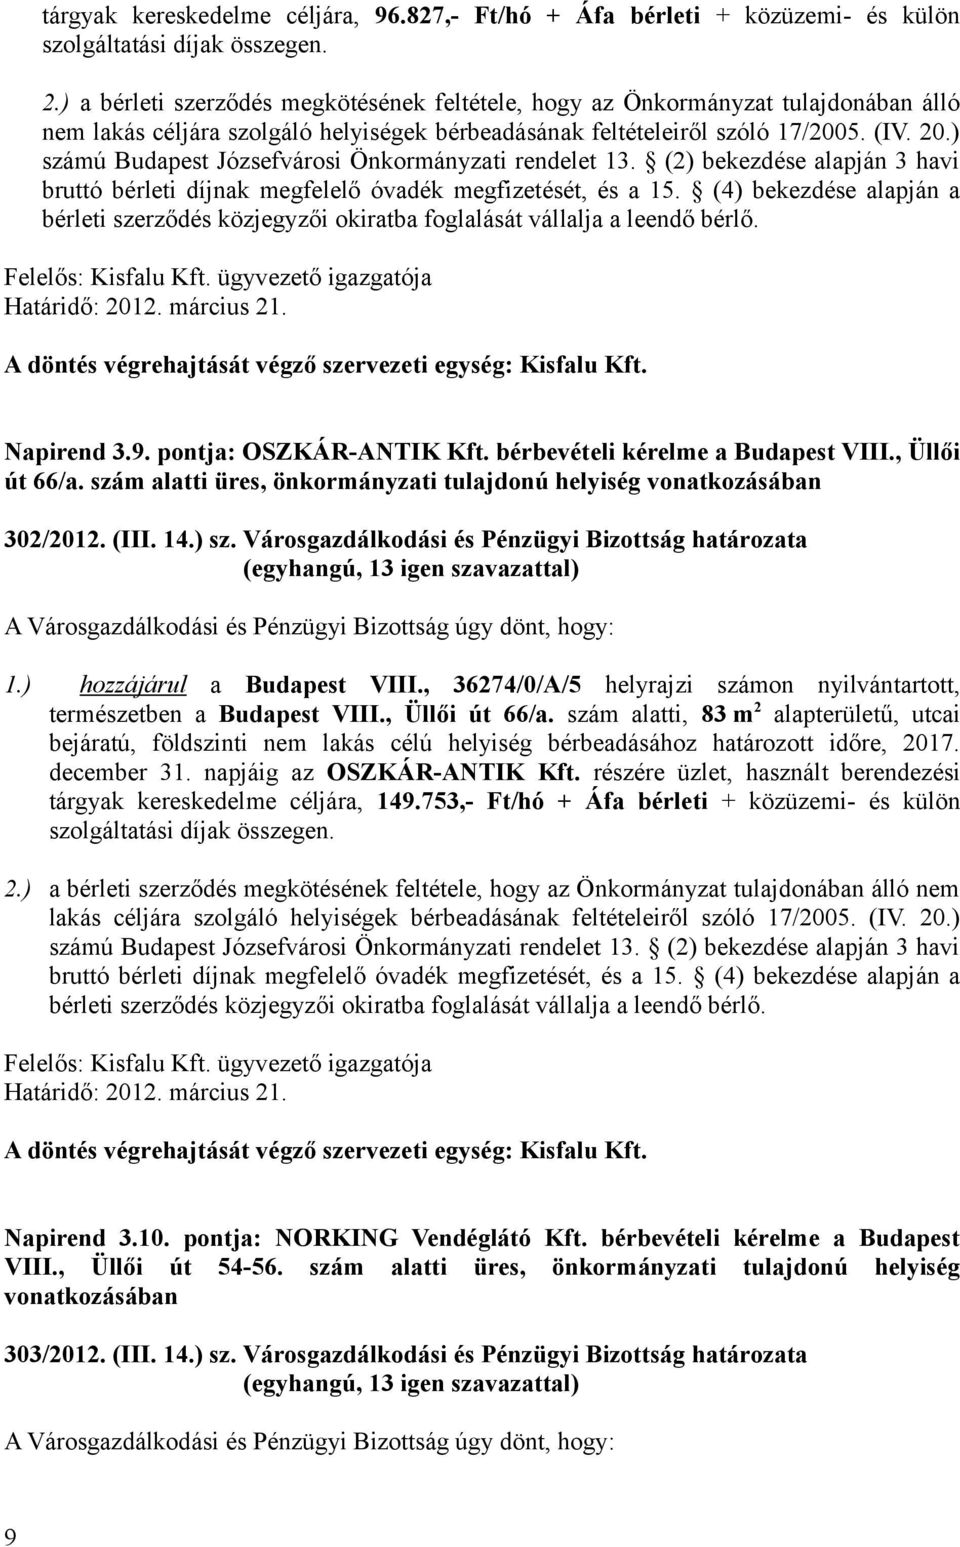 ) számú Budapest Józsefvárosi Önkormányzati rendelet 13. (2) bekezdése alapján 3 havi bruttó bérleti díjnak megfelelő óvadék megfizetését, és a 15.